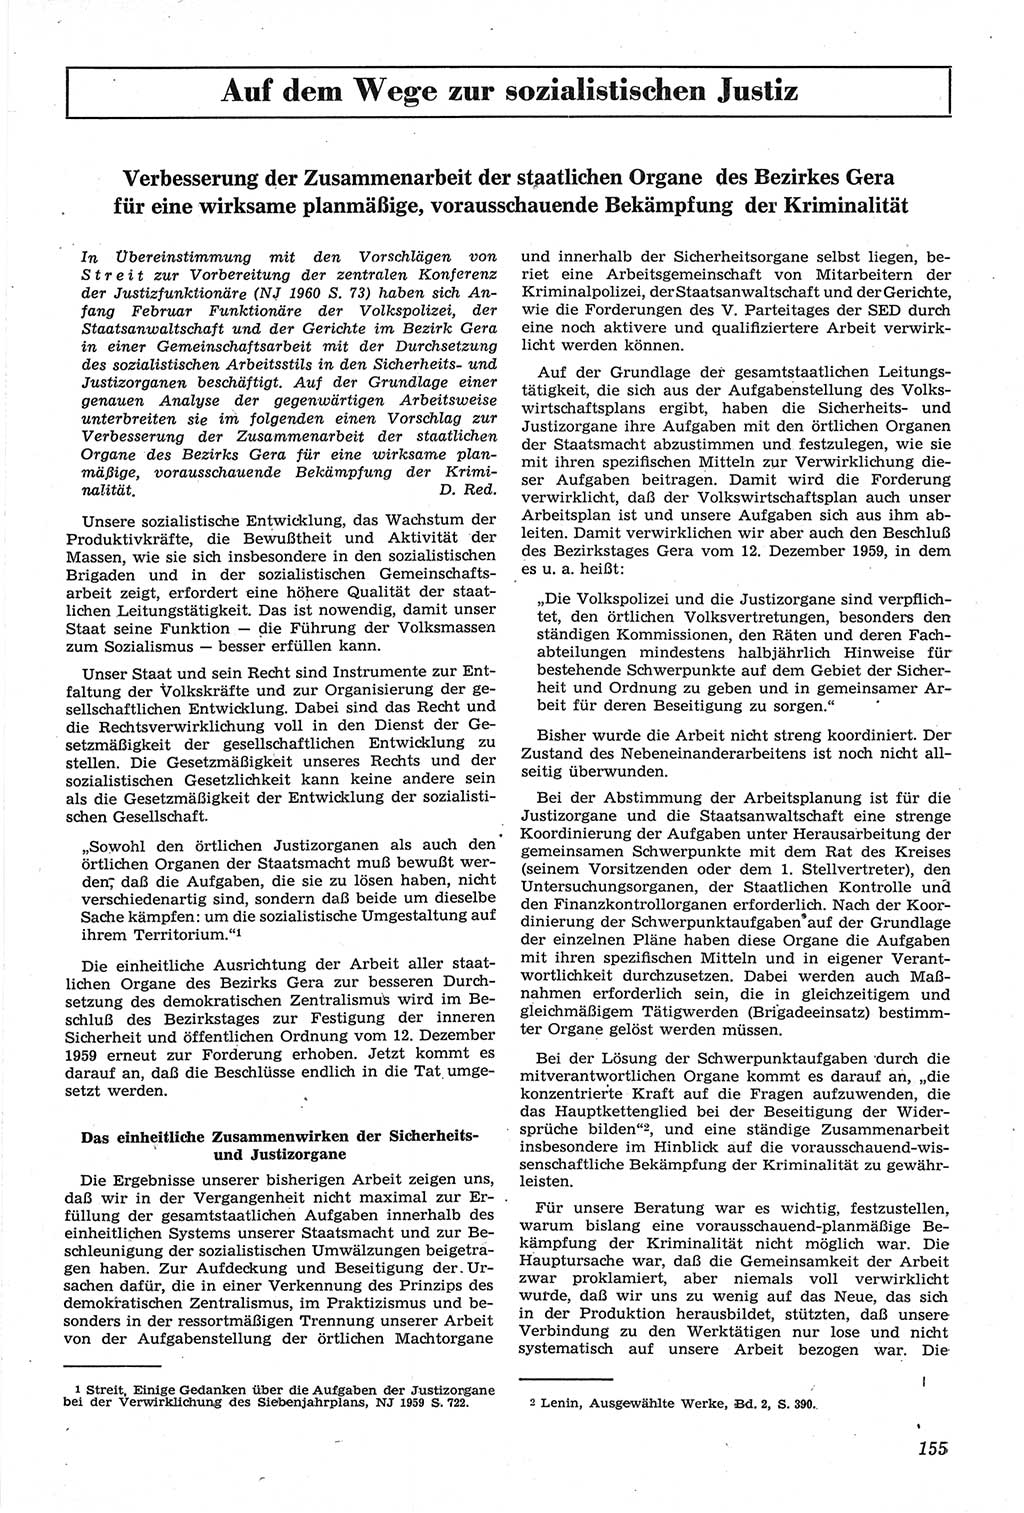 Neue Justiz (NJ), Zeitschrift für Recht und Rechtswissenschaft [Deutsche Demokratische Republik (DDR)], 14. Jahrgang 1960, Seite 155 (NJ DDR 1960, S. 155)